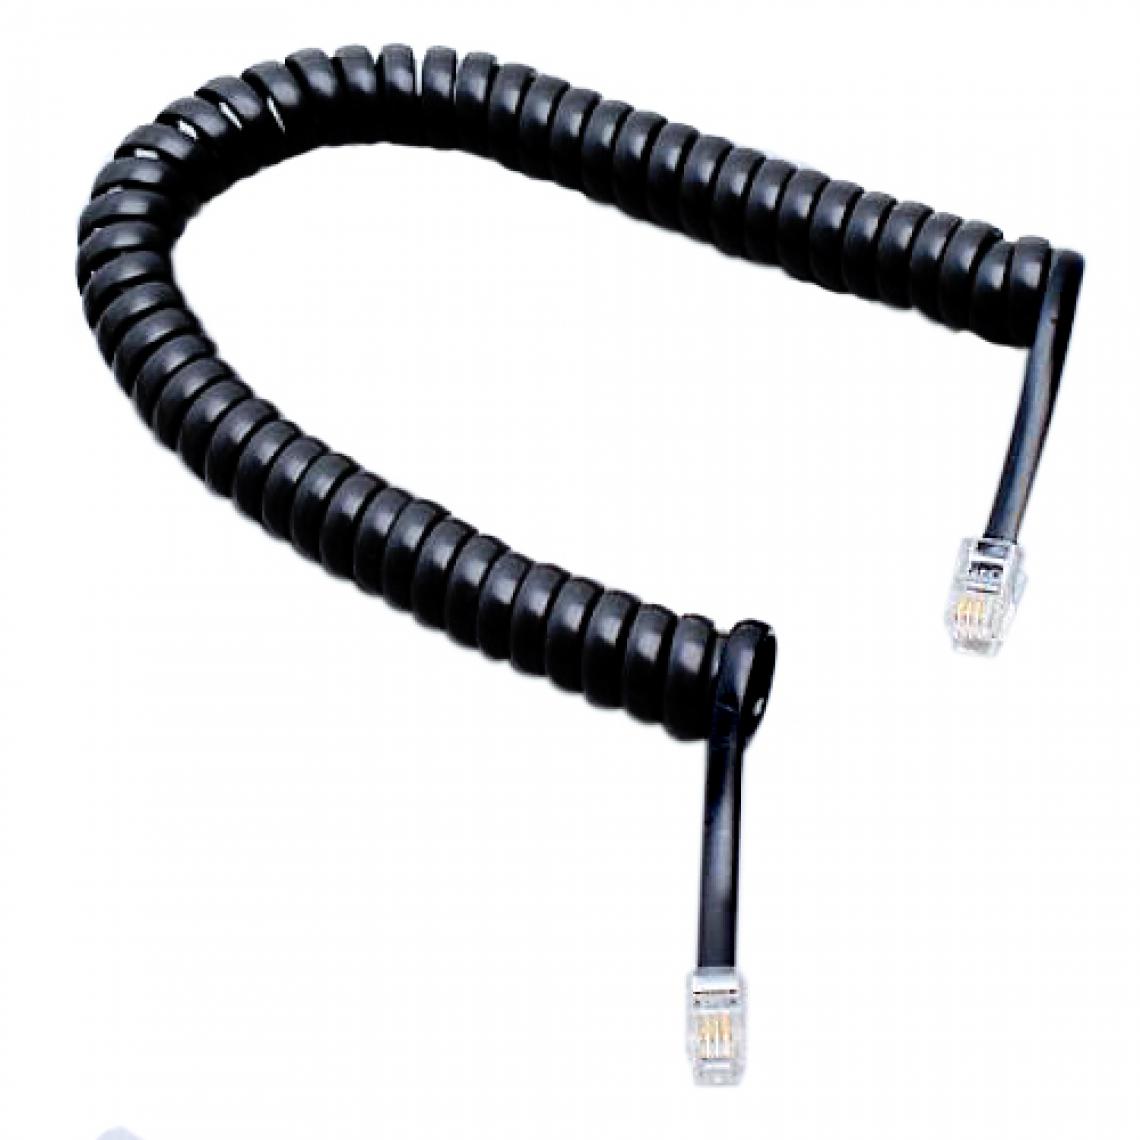 marque generique - 2m Câble Rallonge RJ11 Mâle Vers Mâle Pour Téléphone - Fils et câbles électriques